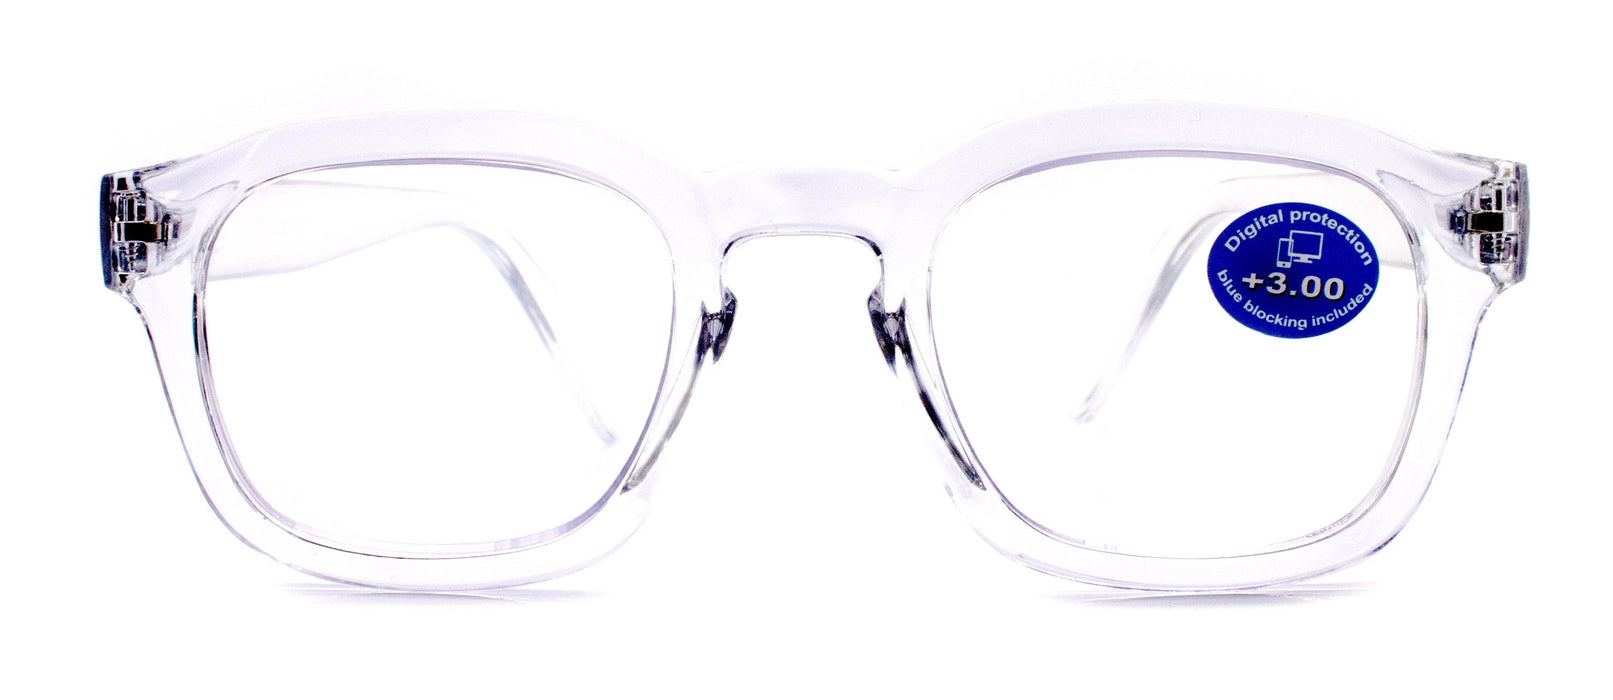 lv blue light glasses